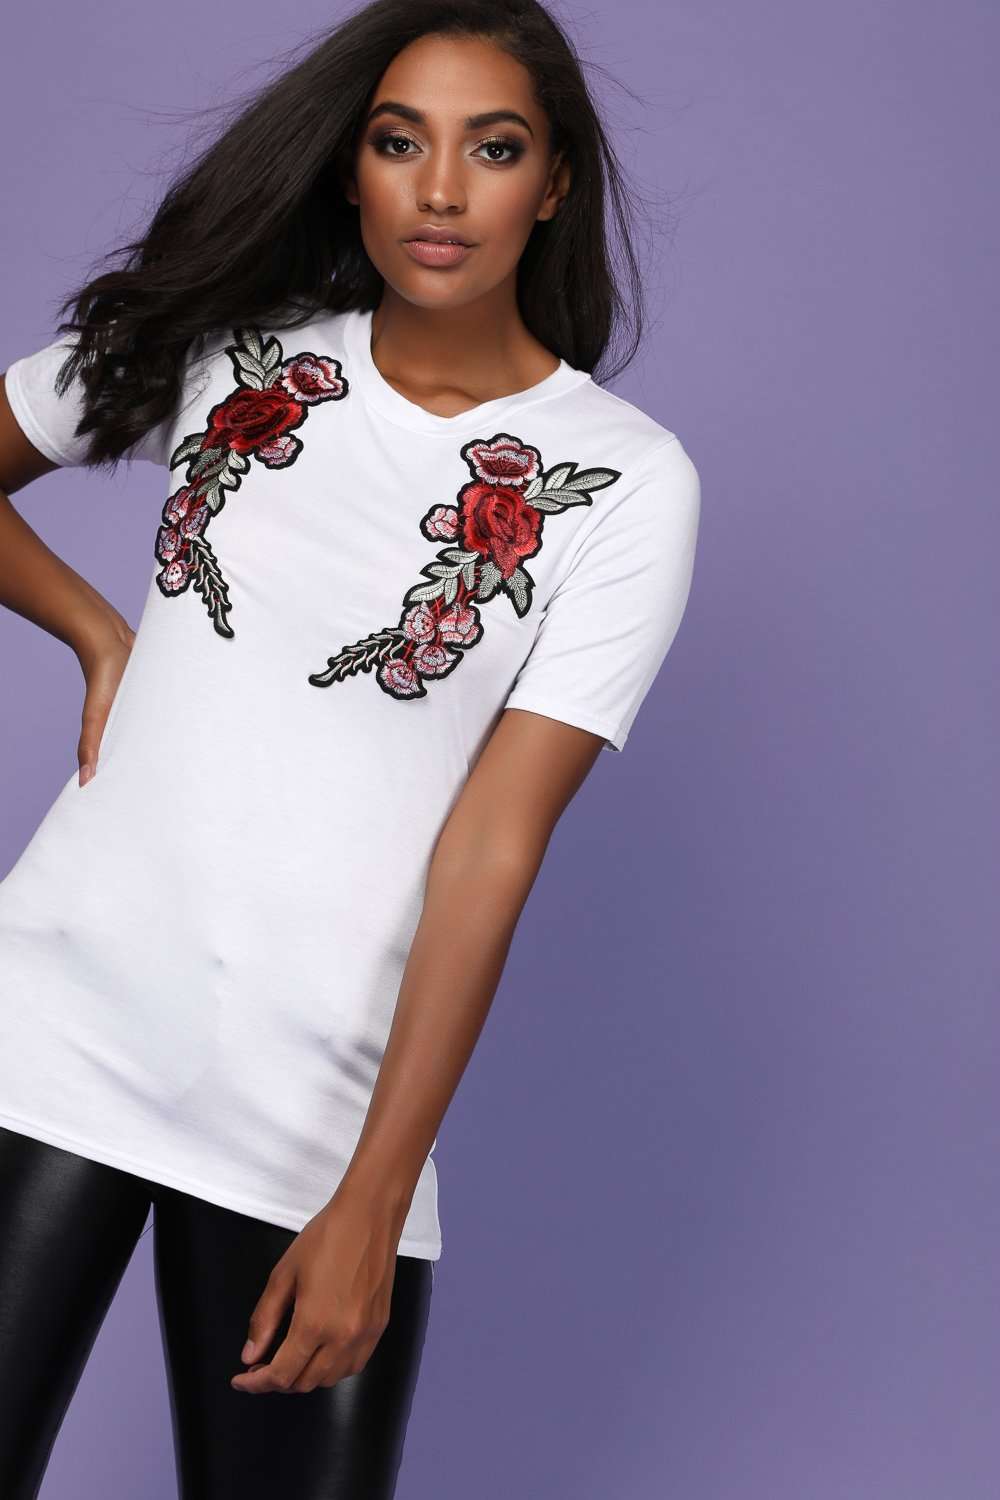 Navy Floral Rose Applique Baggy Tshirt - bejealous-com